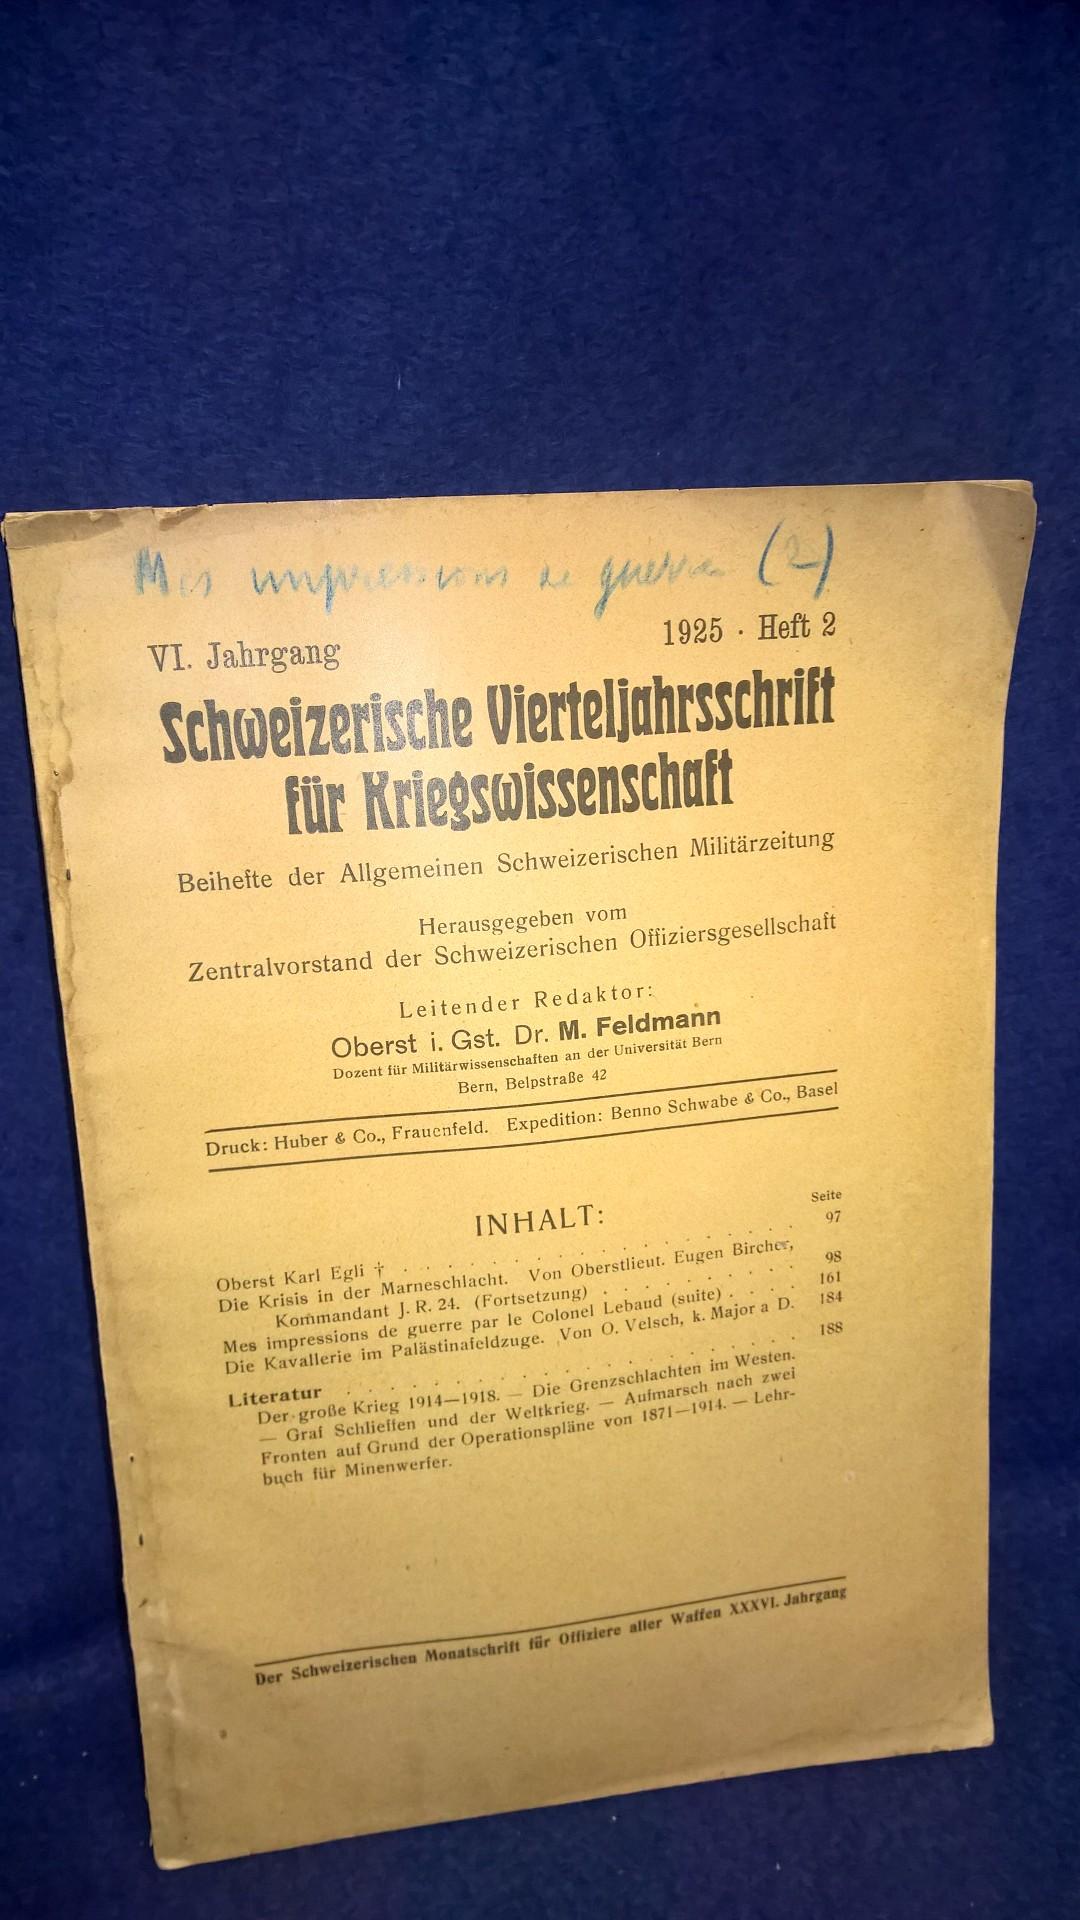 Schweizerische Vierteljahresschrift für Kriegswissenschaften, Heft 2, 1925. Aus dem Inhalt: Die Krisis in der Marneschlacht/ Die Kavallerie im Palästinafeldzuge.